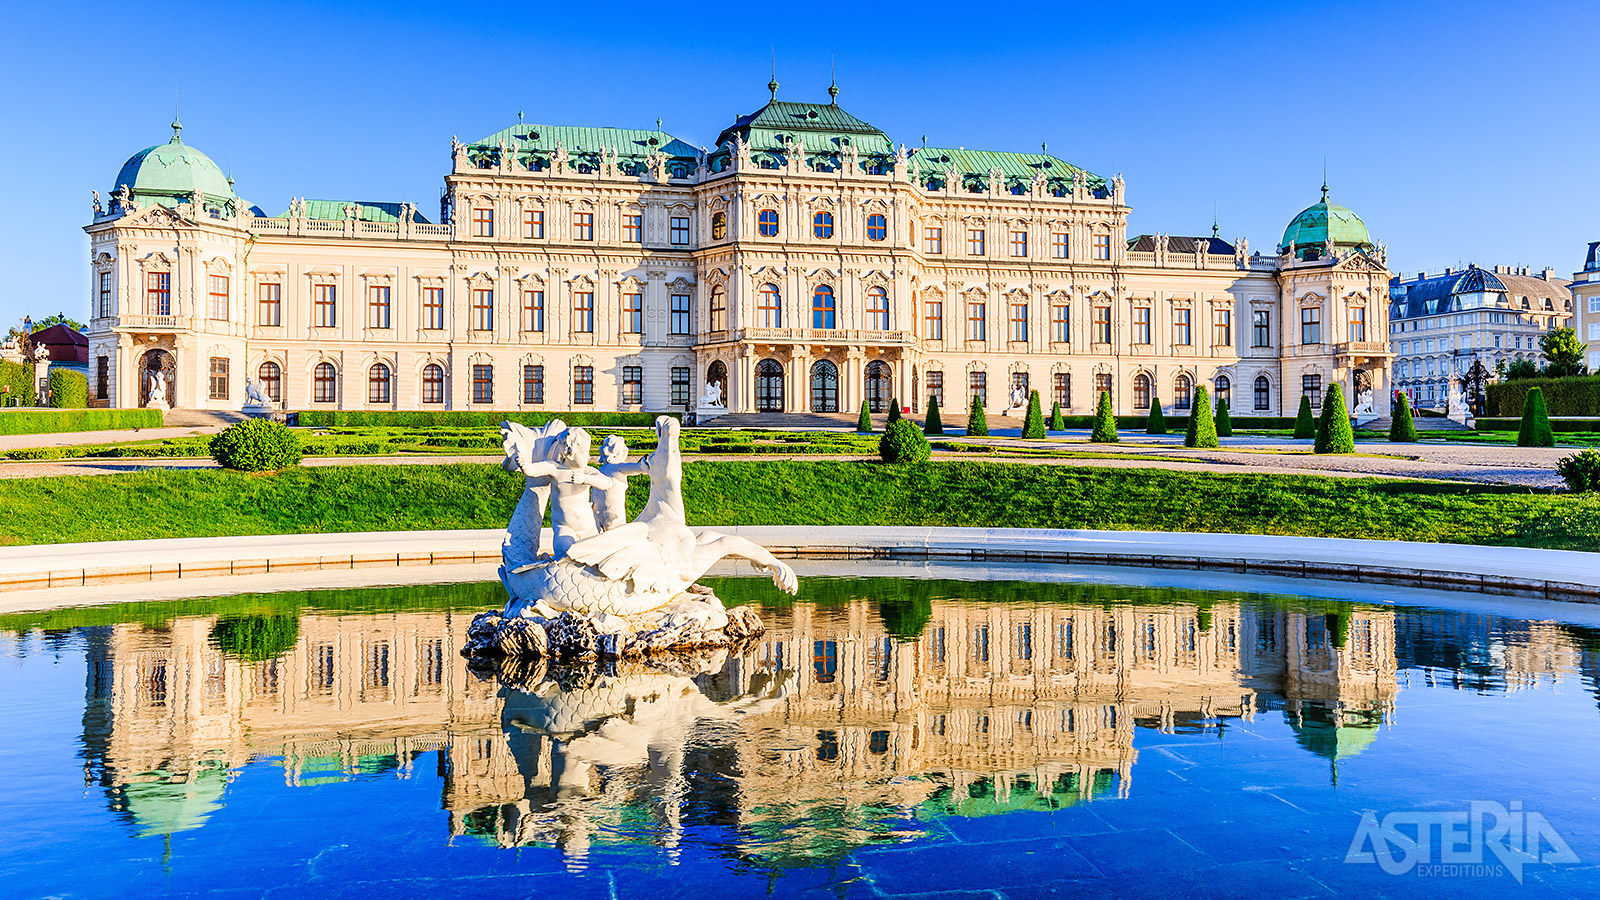 De Oostenrijkse barok is een ware levenskunst met als hoogtepunt het Schloss Belvedere, twee gebouwen met tussenin feeërieke tuinen in terrasvorm